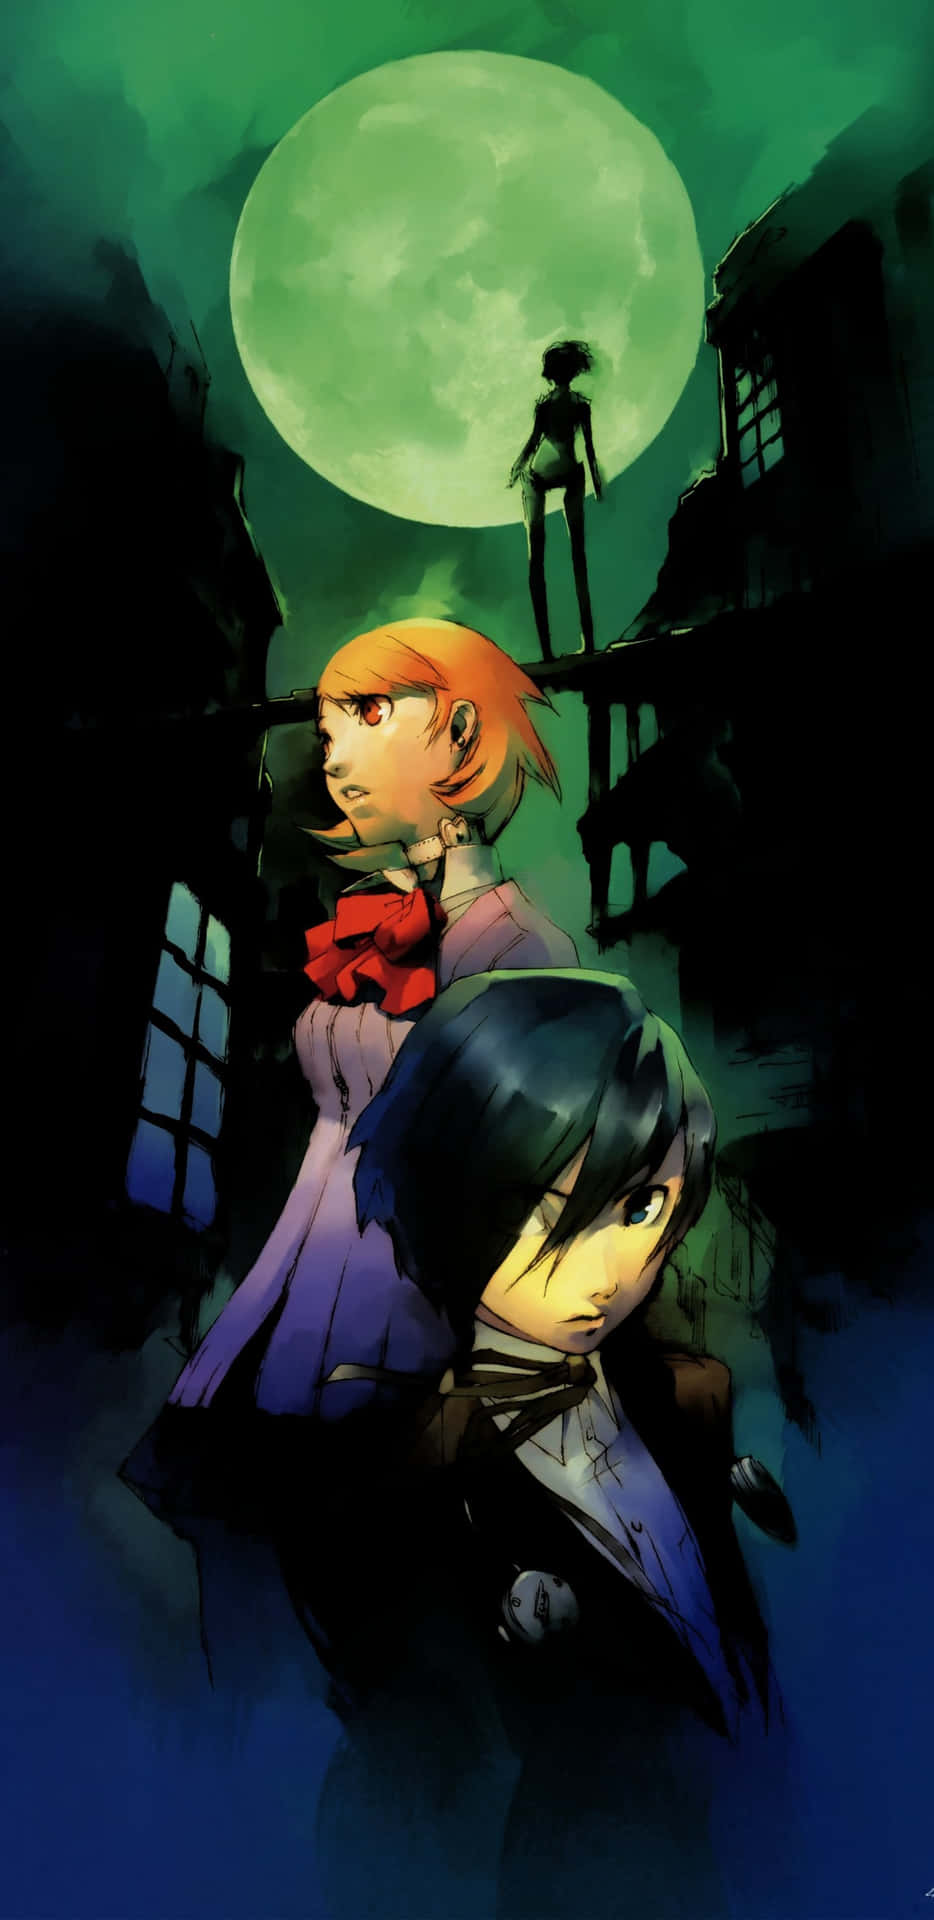 Persona3 Characters Moonlit Backdrop Wallpaper